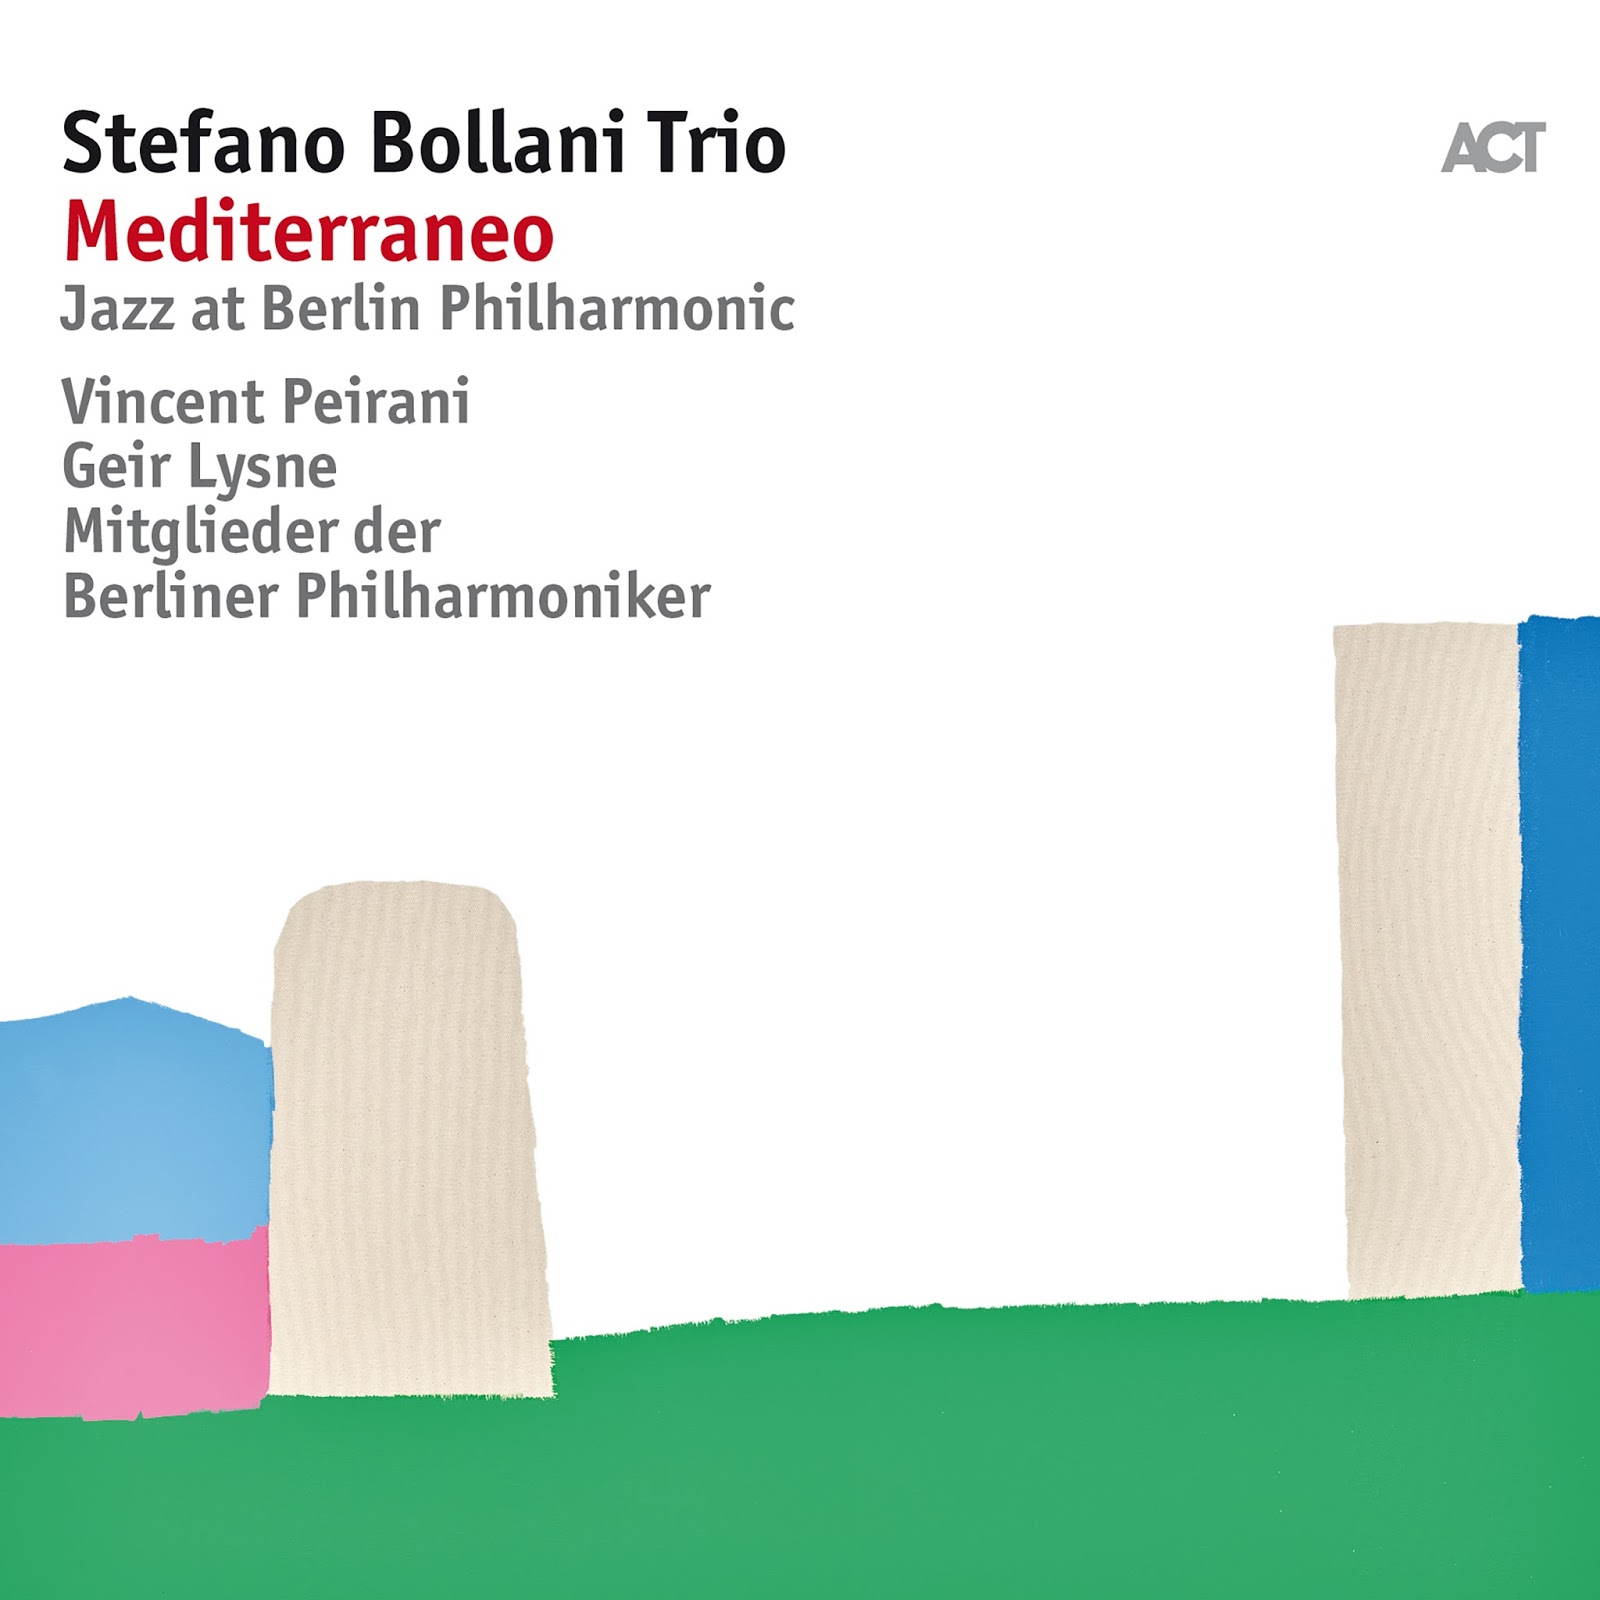 Stafano Bollani Trio - Mediterraneo